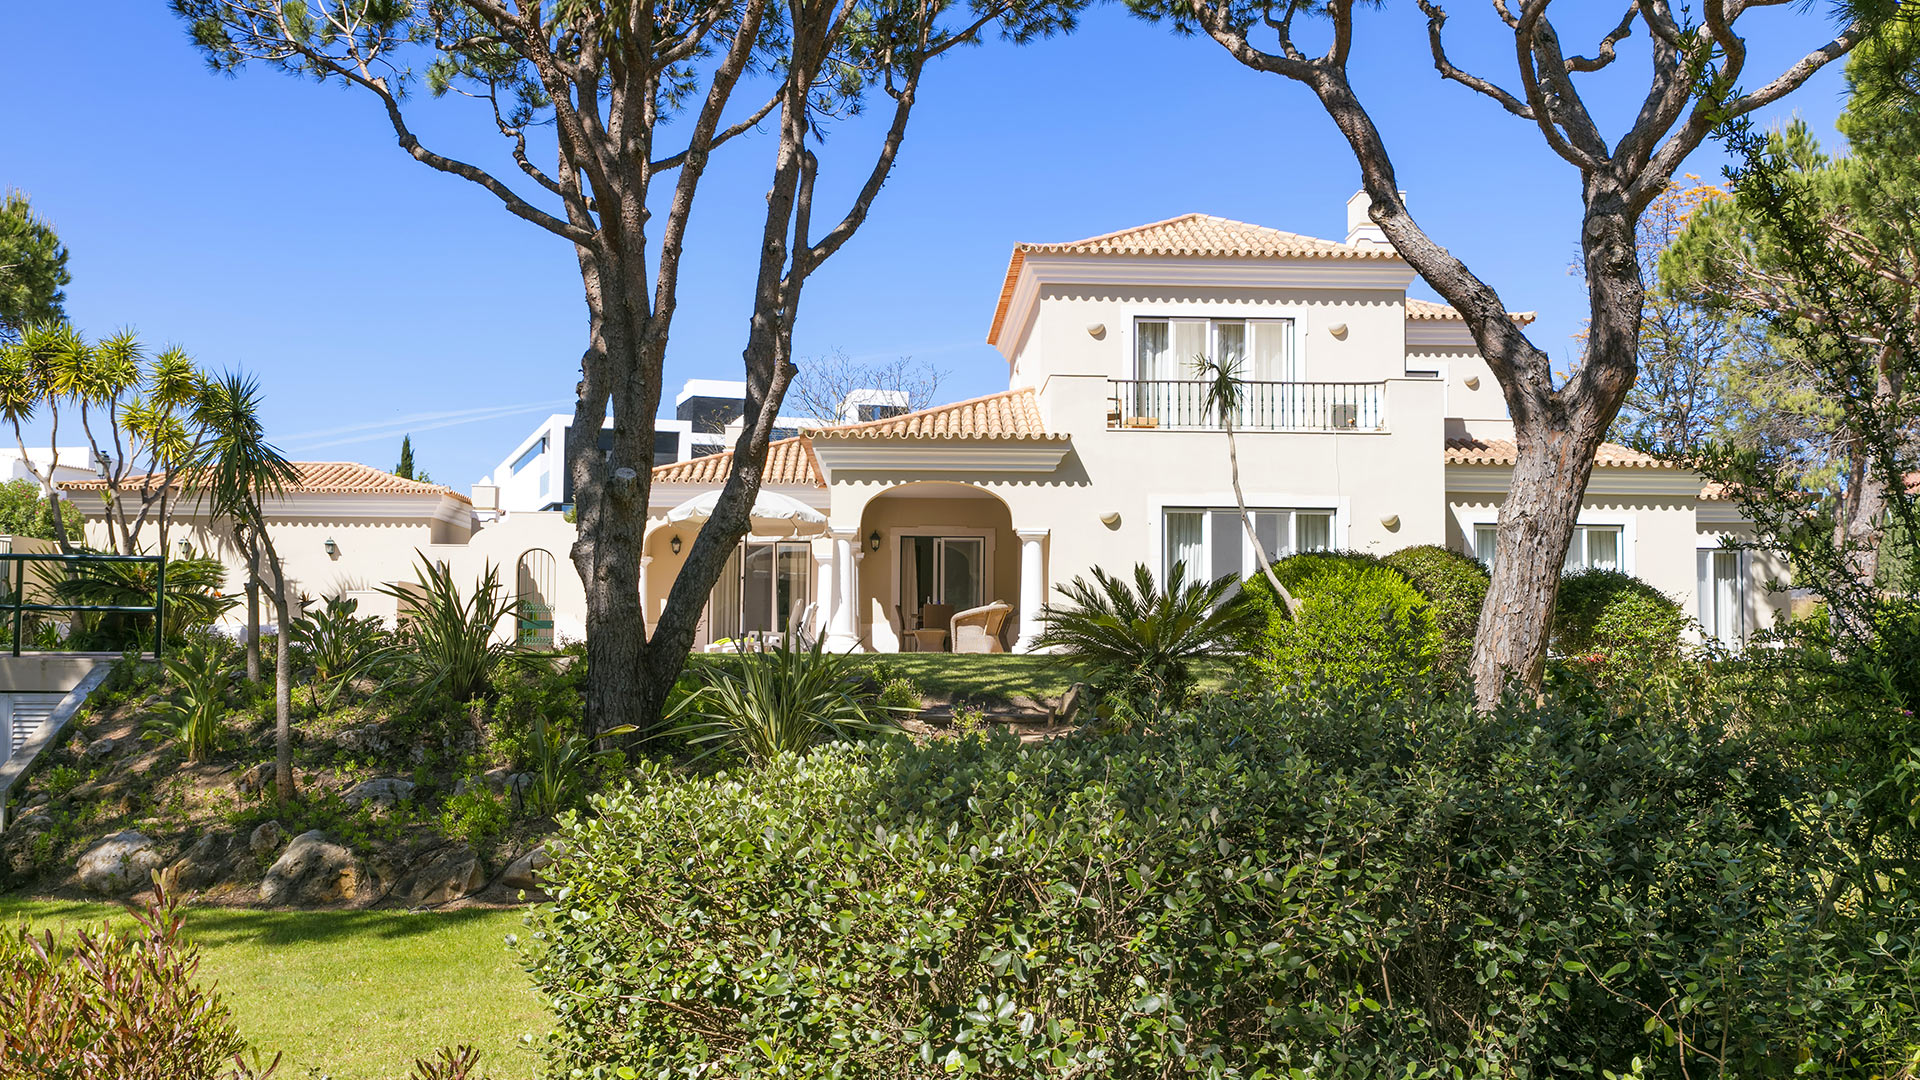 Villa Villa Peach, Rental in Algarve